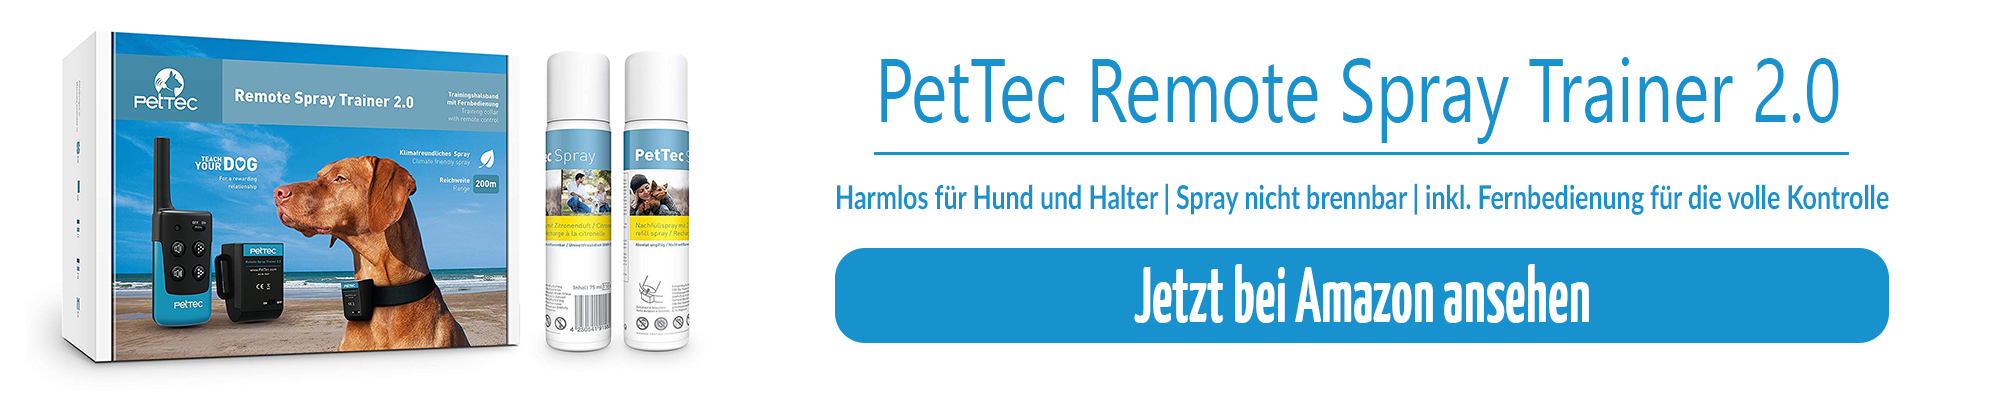 Amazon PetTec Remote Spray Trainer 2.0